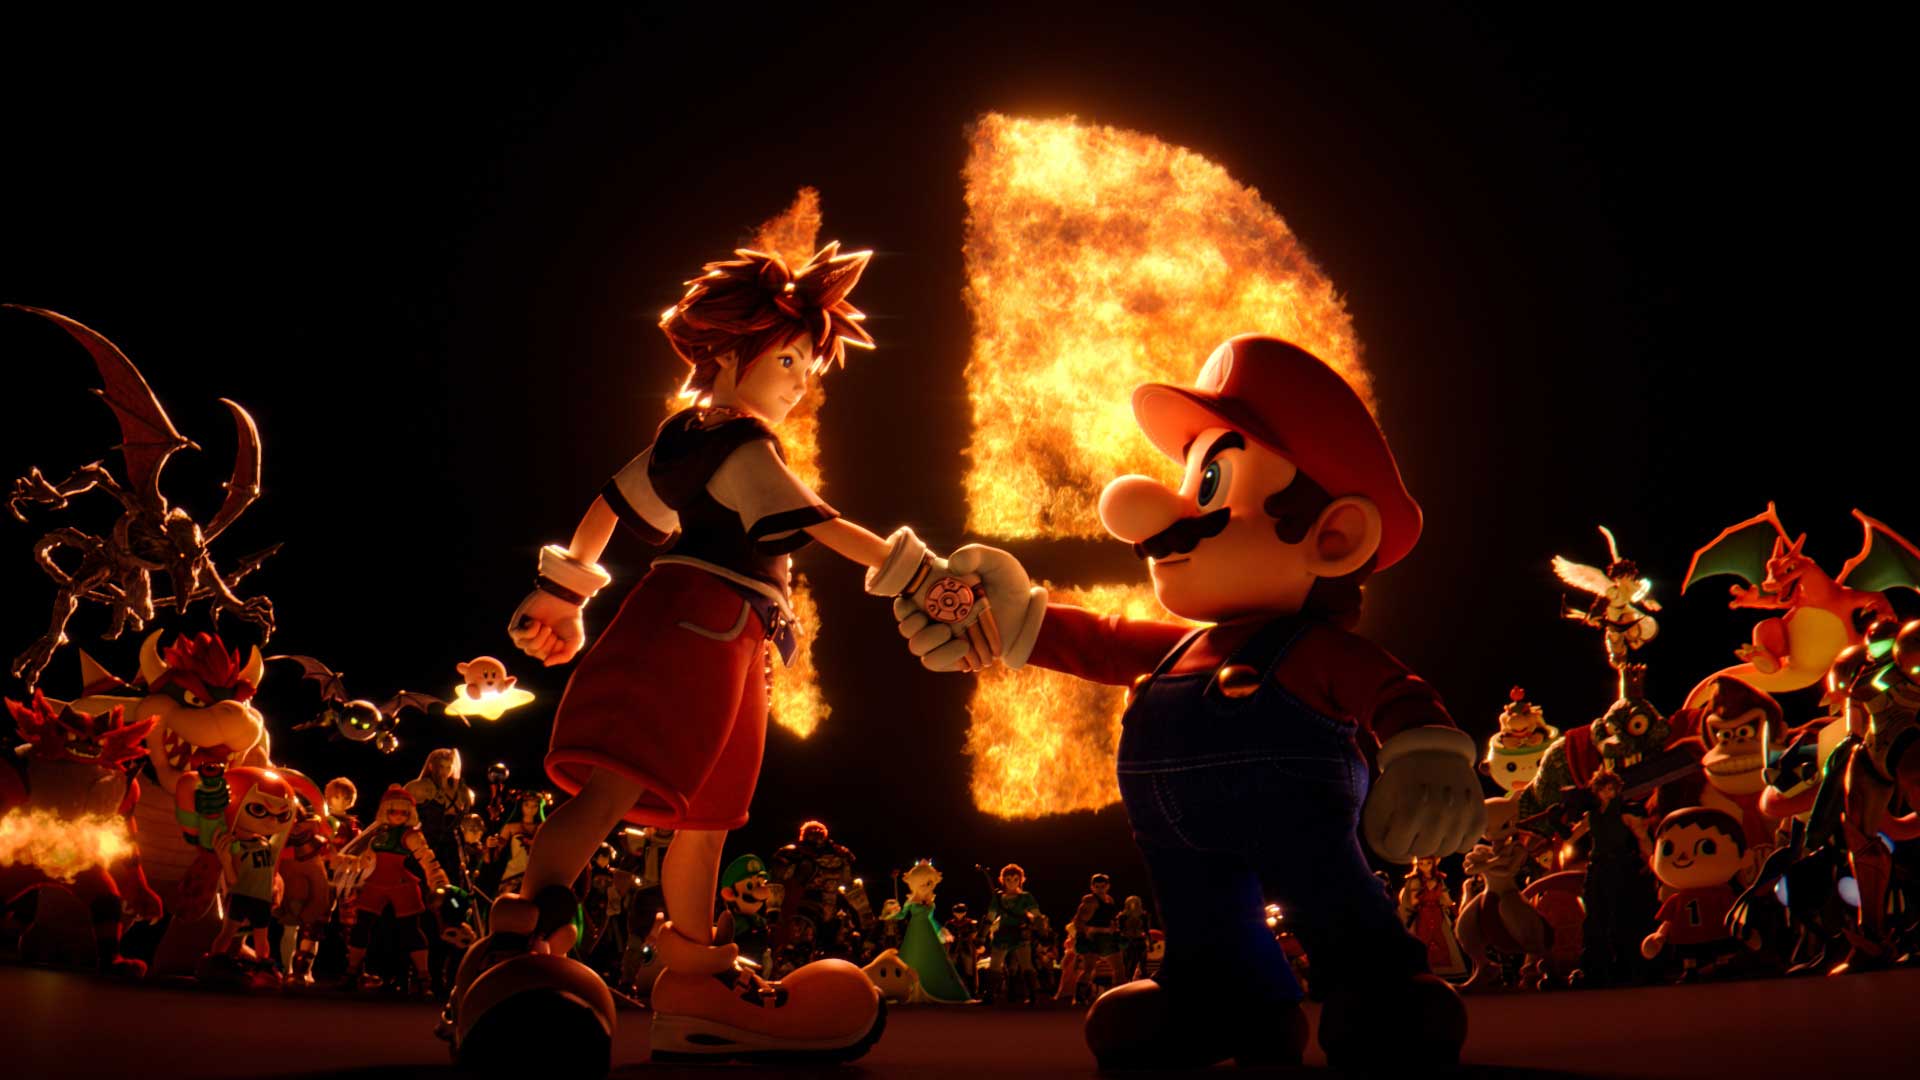 سورا از بازی Kingdom Hearts مشغول دست دادن با ماریو در بازی سوپر اسمش برادرز آلتیمیت